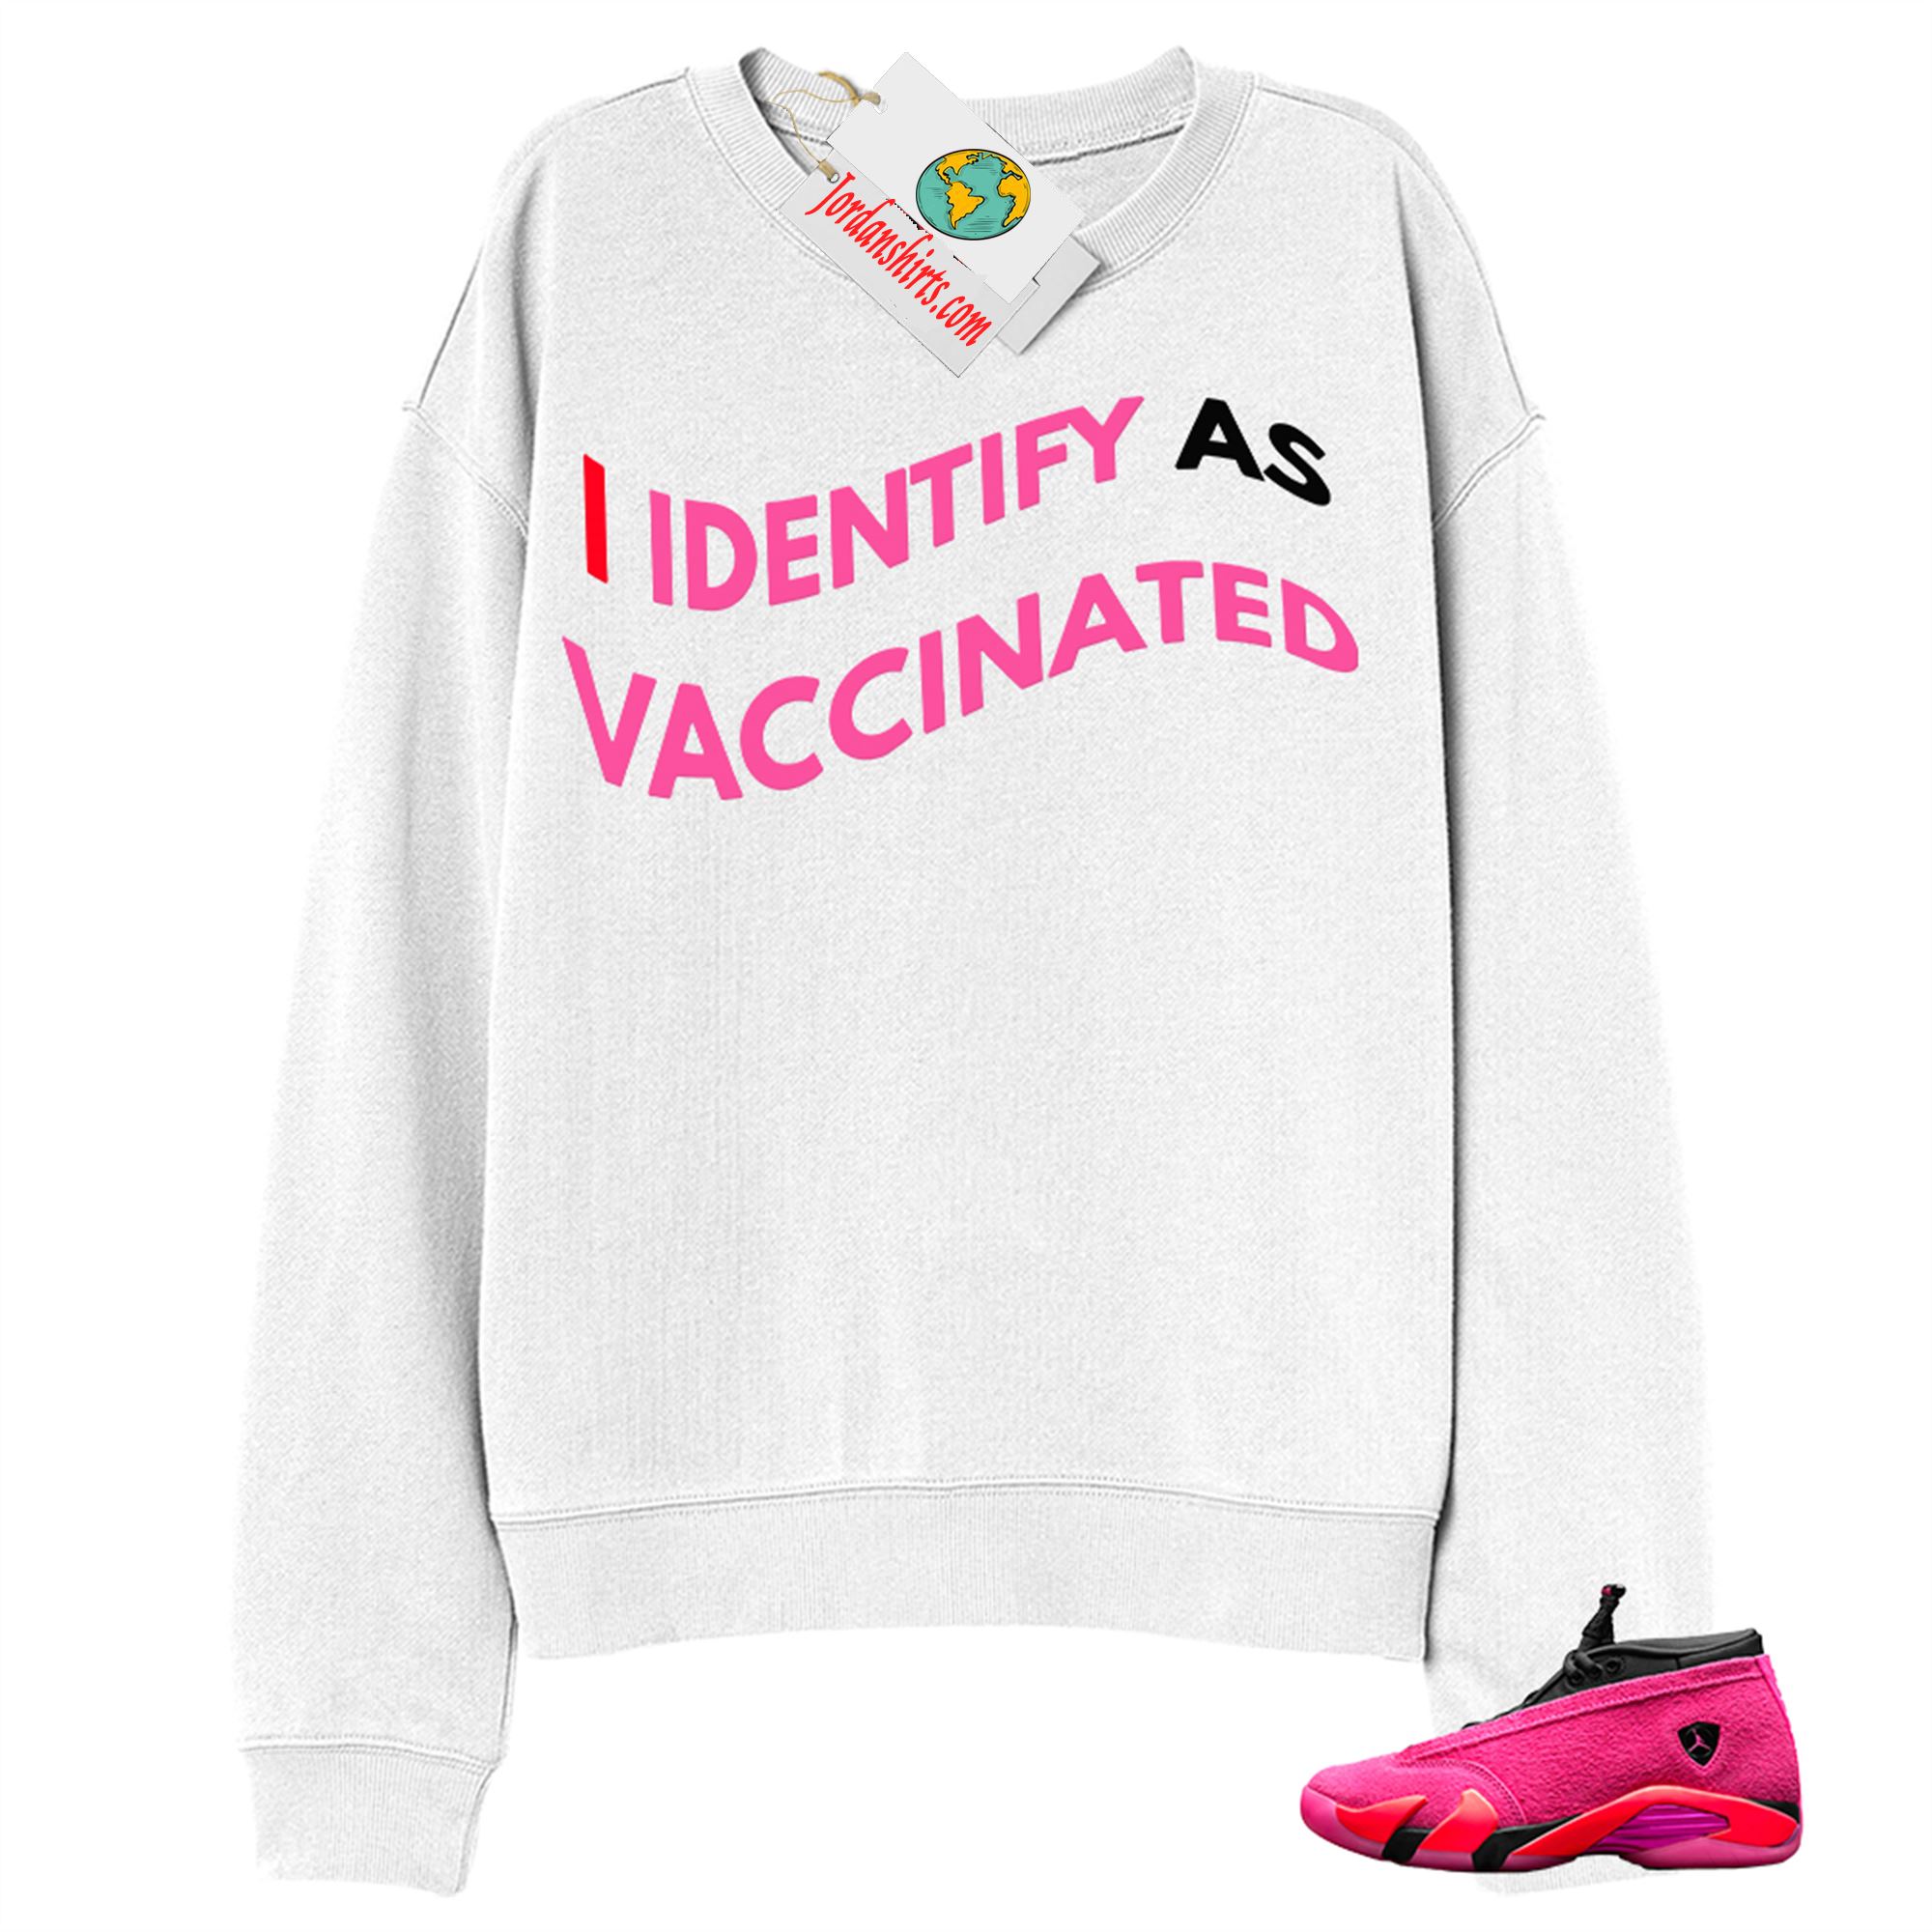 Jordan 14 Sweatshirt, I Identify As Vaccinated White Sweatshirt Air Jordan 14 Wmns Shocking Pink 14s Plus Size Up To 5xl